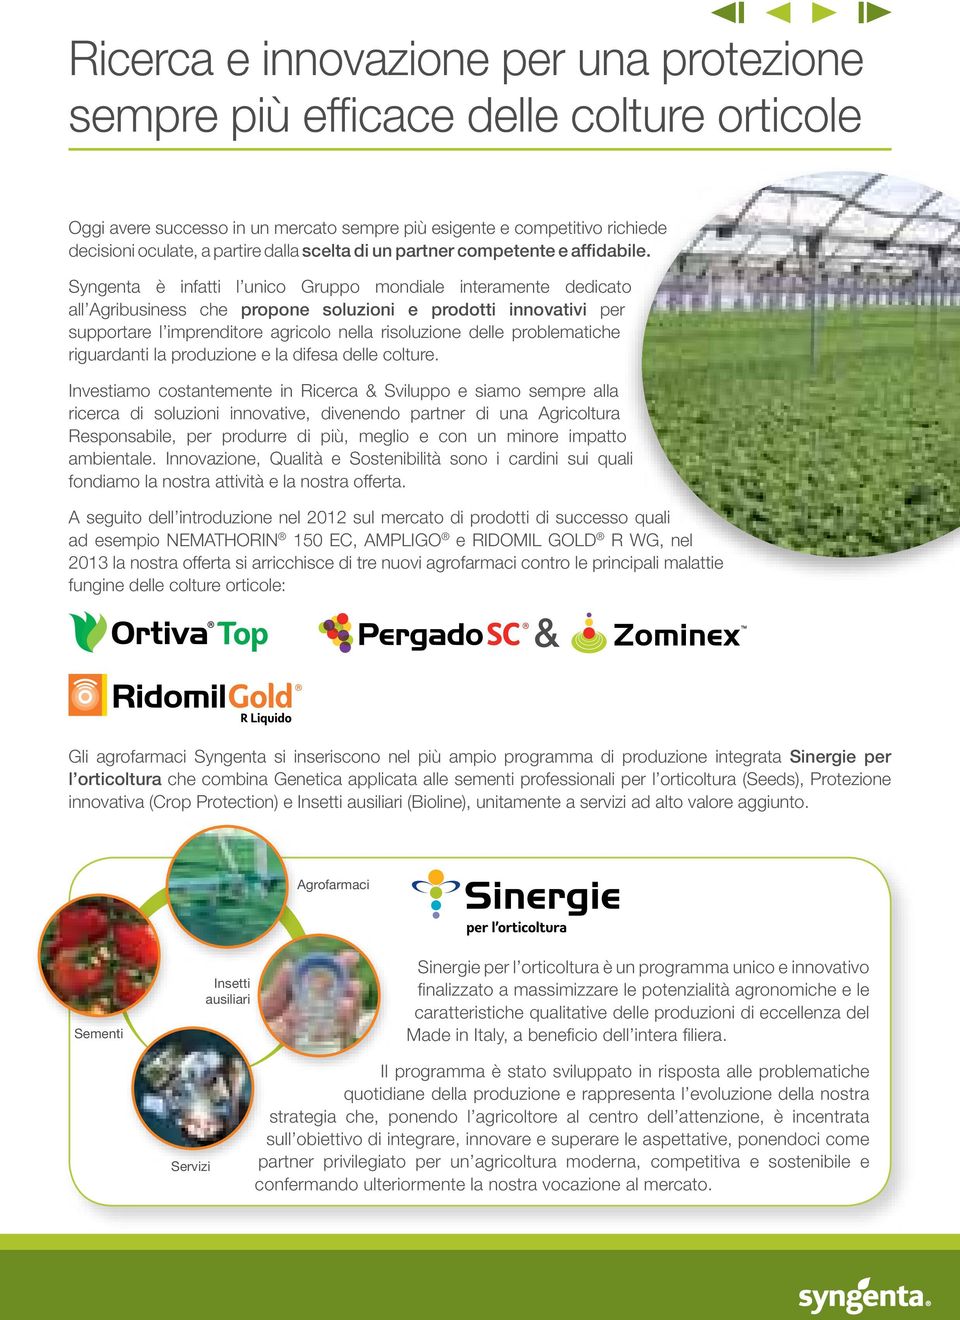 Syngenta è infatti l unico Gruppo mondiale interamente dedicato all Agribusiness che propone soluzioni e prodotti innovativi per supportare l imprenditore agricolo nella risoluzione delle